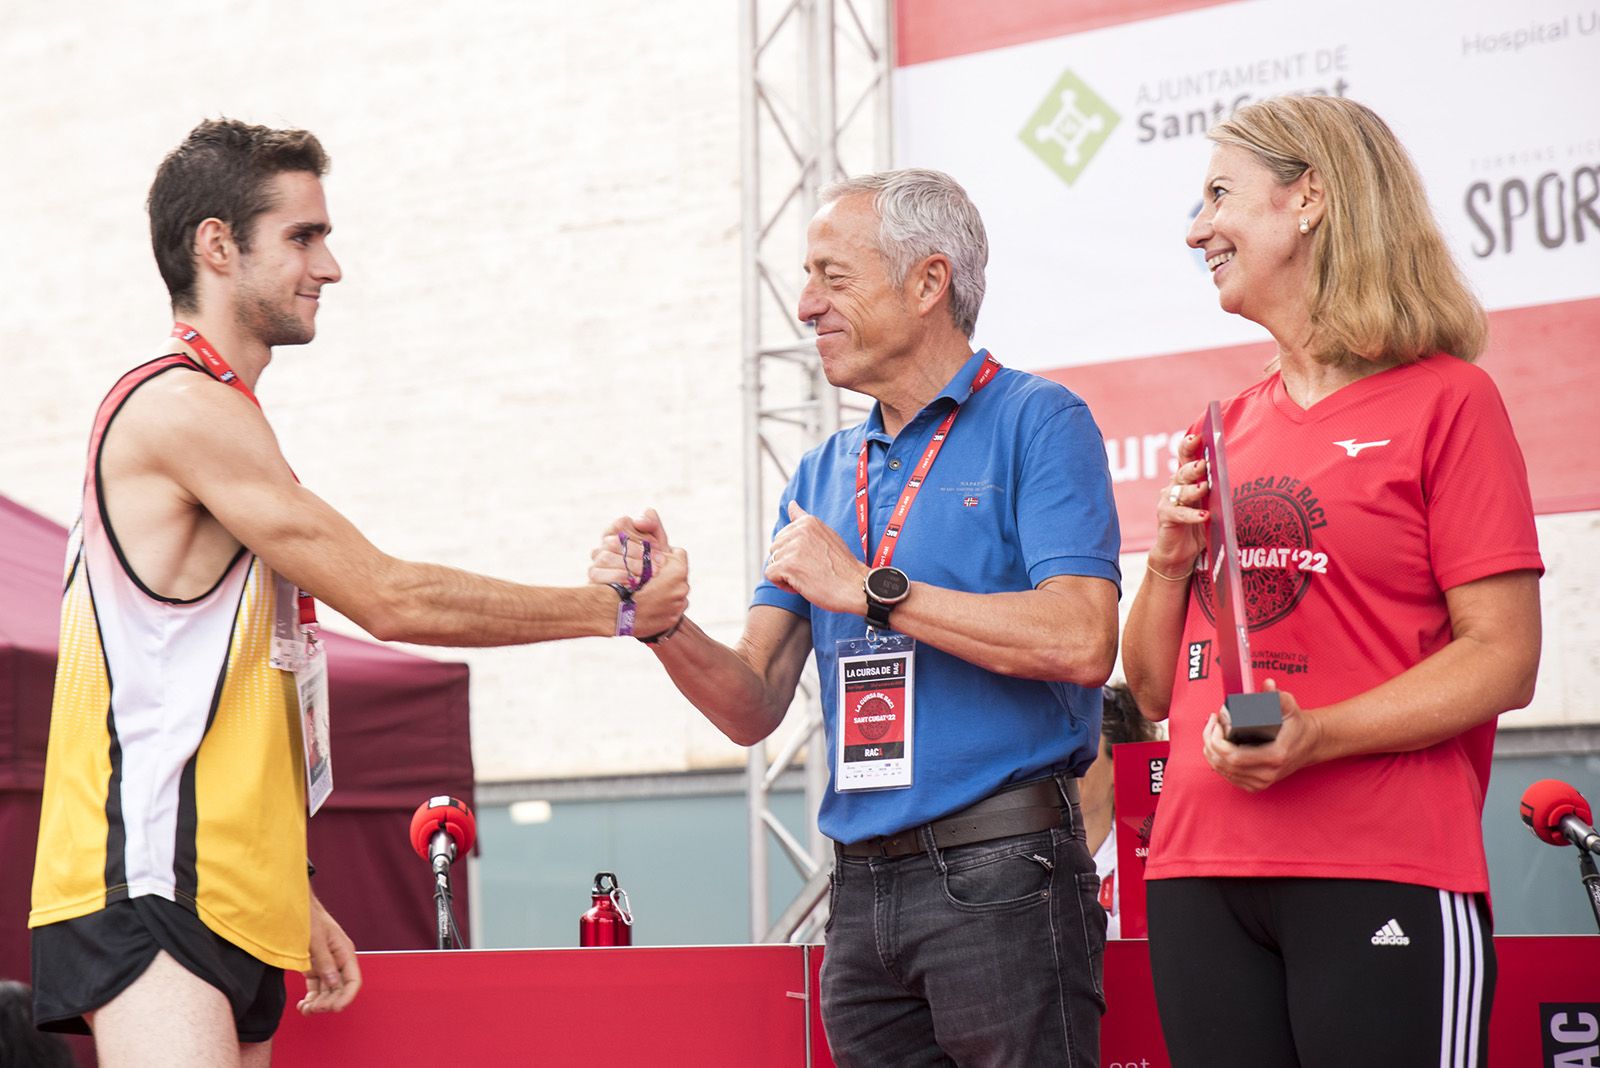 Entrega de premis als guanyadors de La Cursa de Rac1 a Sant Cugat. FOTO: Bernat Millet.